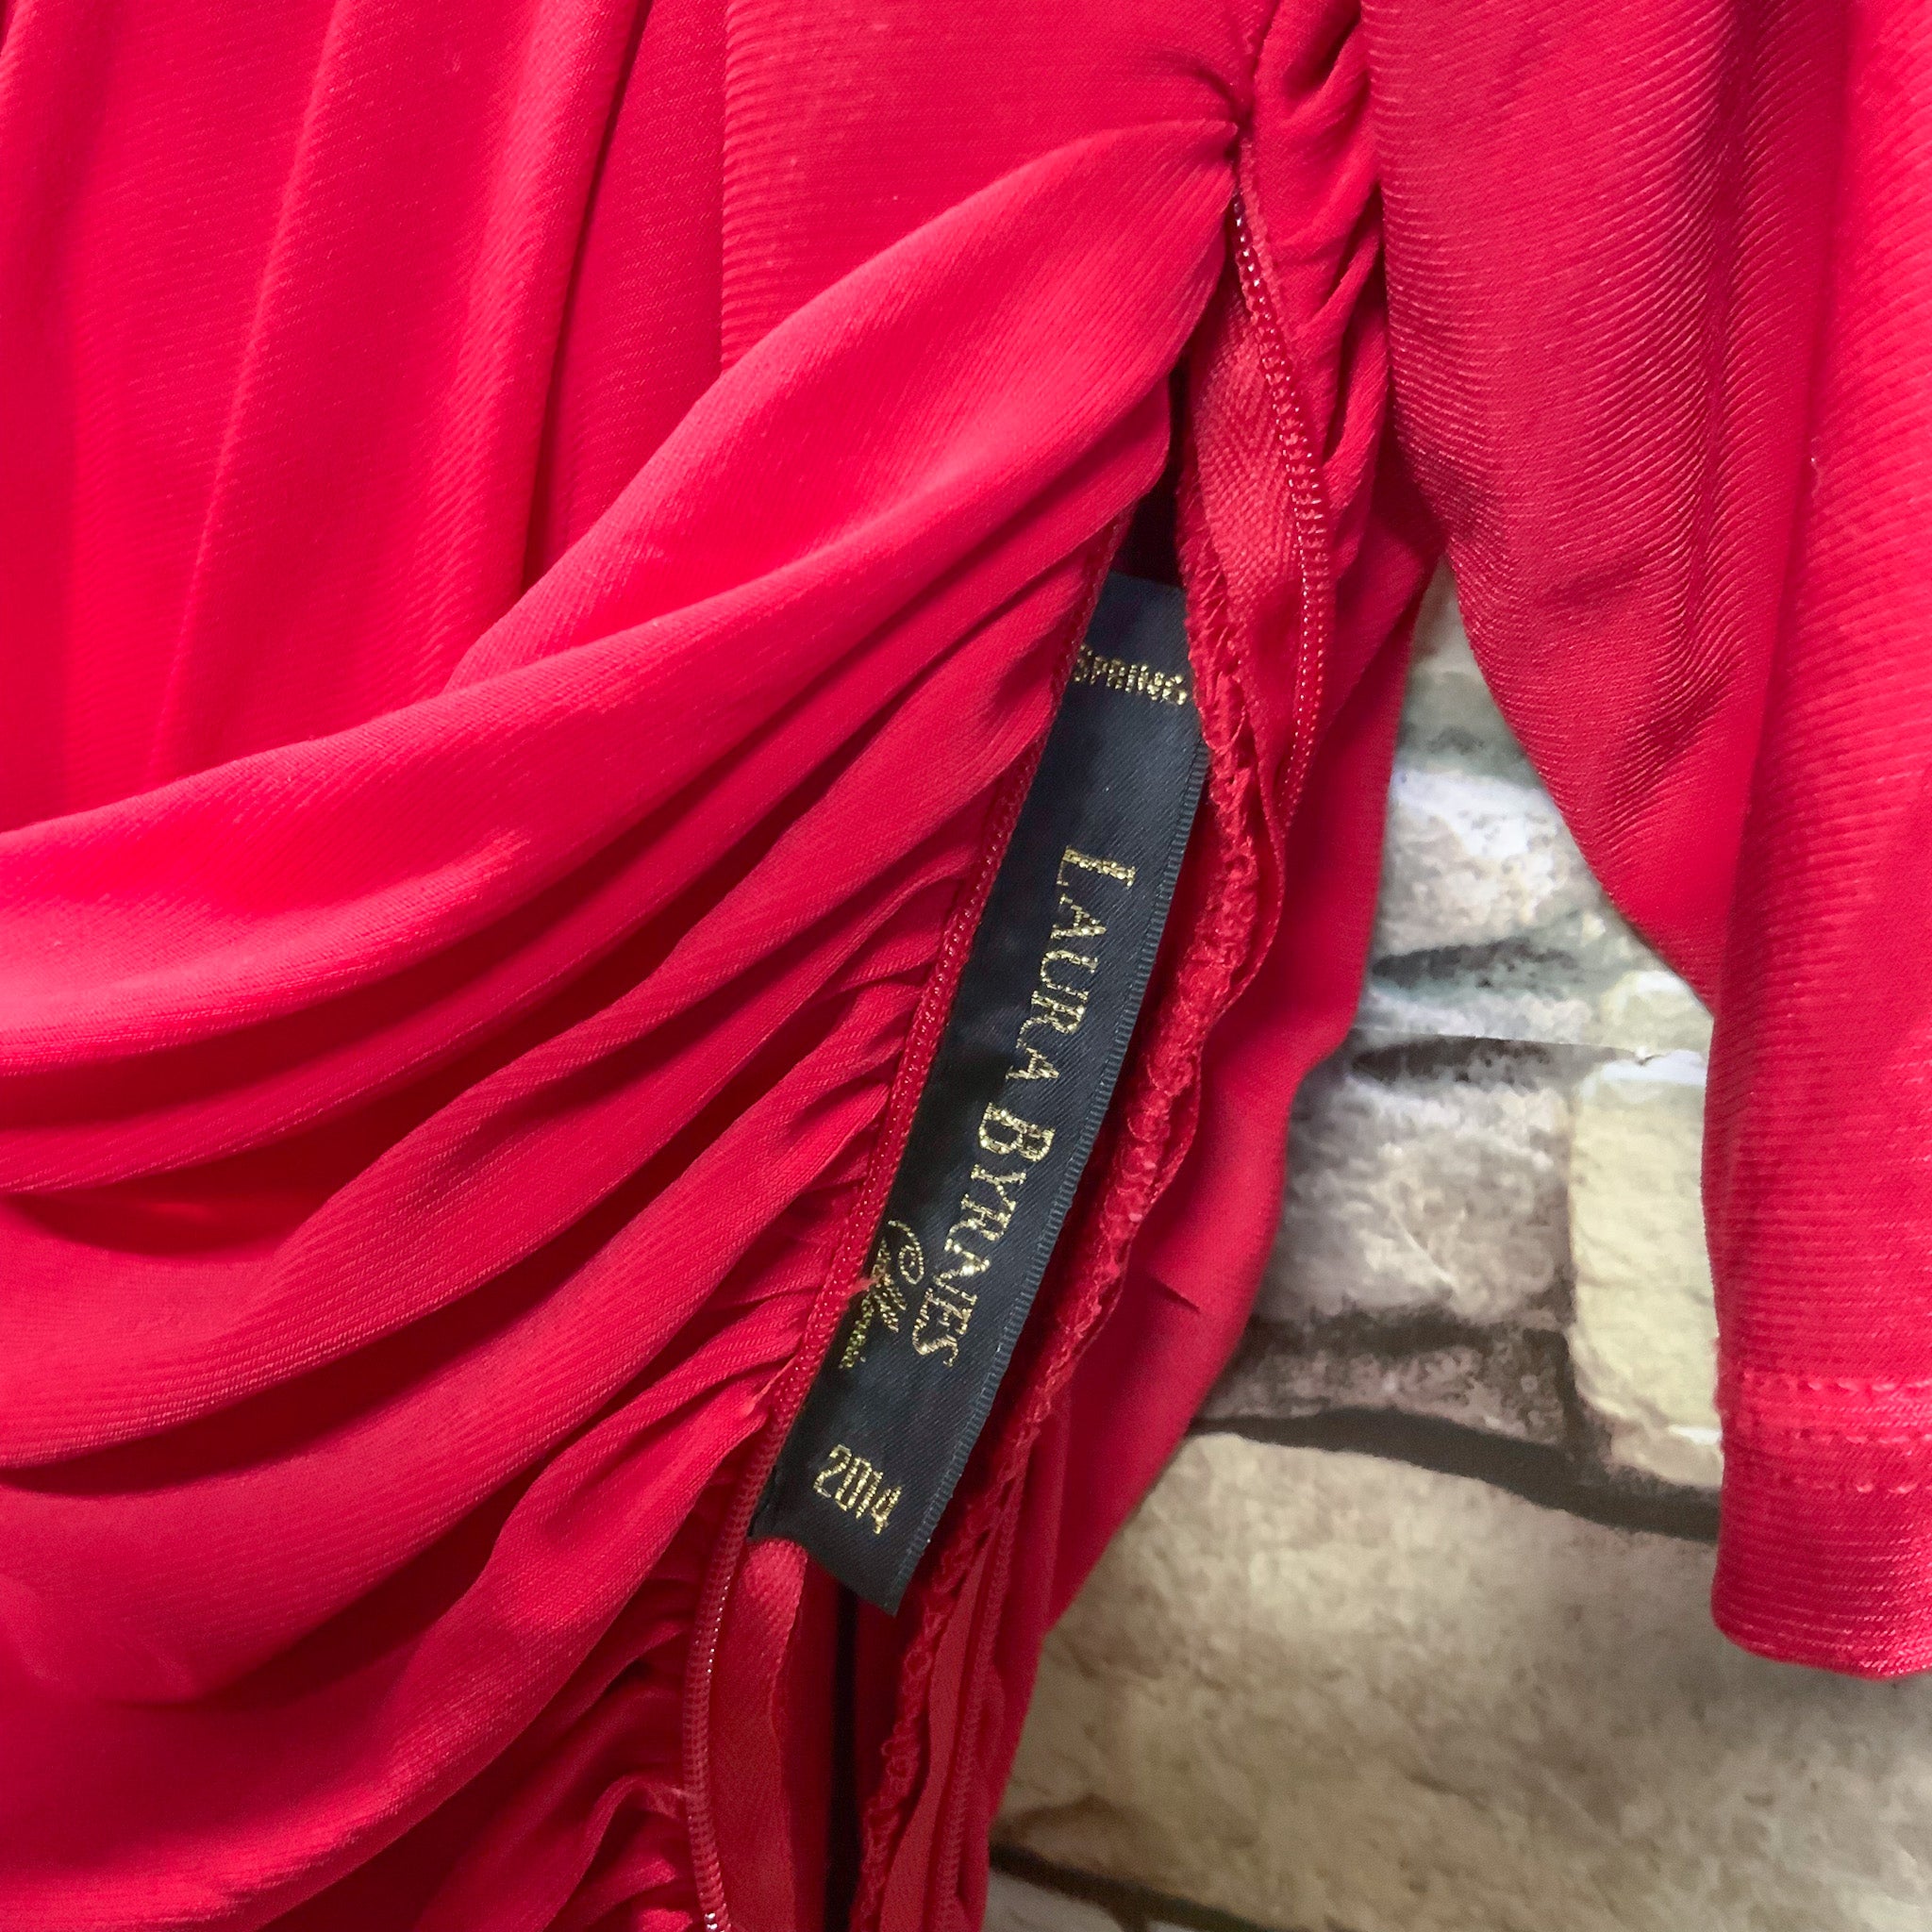 NWT LAURA BYRNES California Monica Wiggle Dress in Red - 4XL (au22